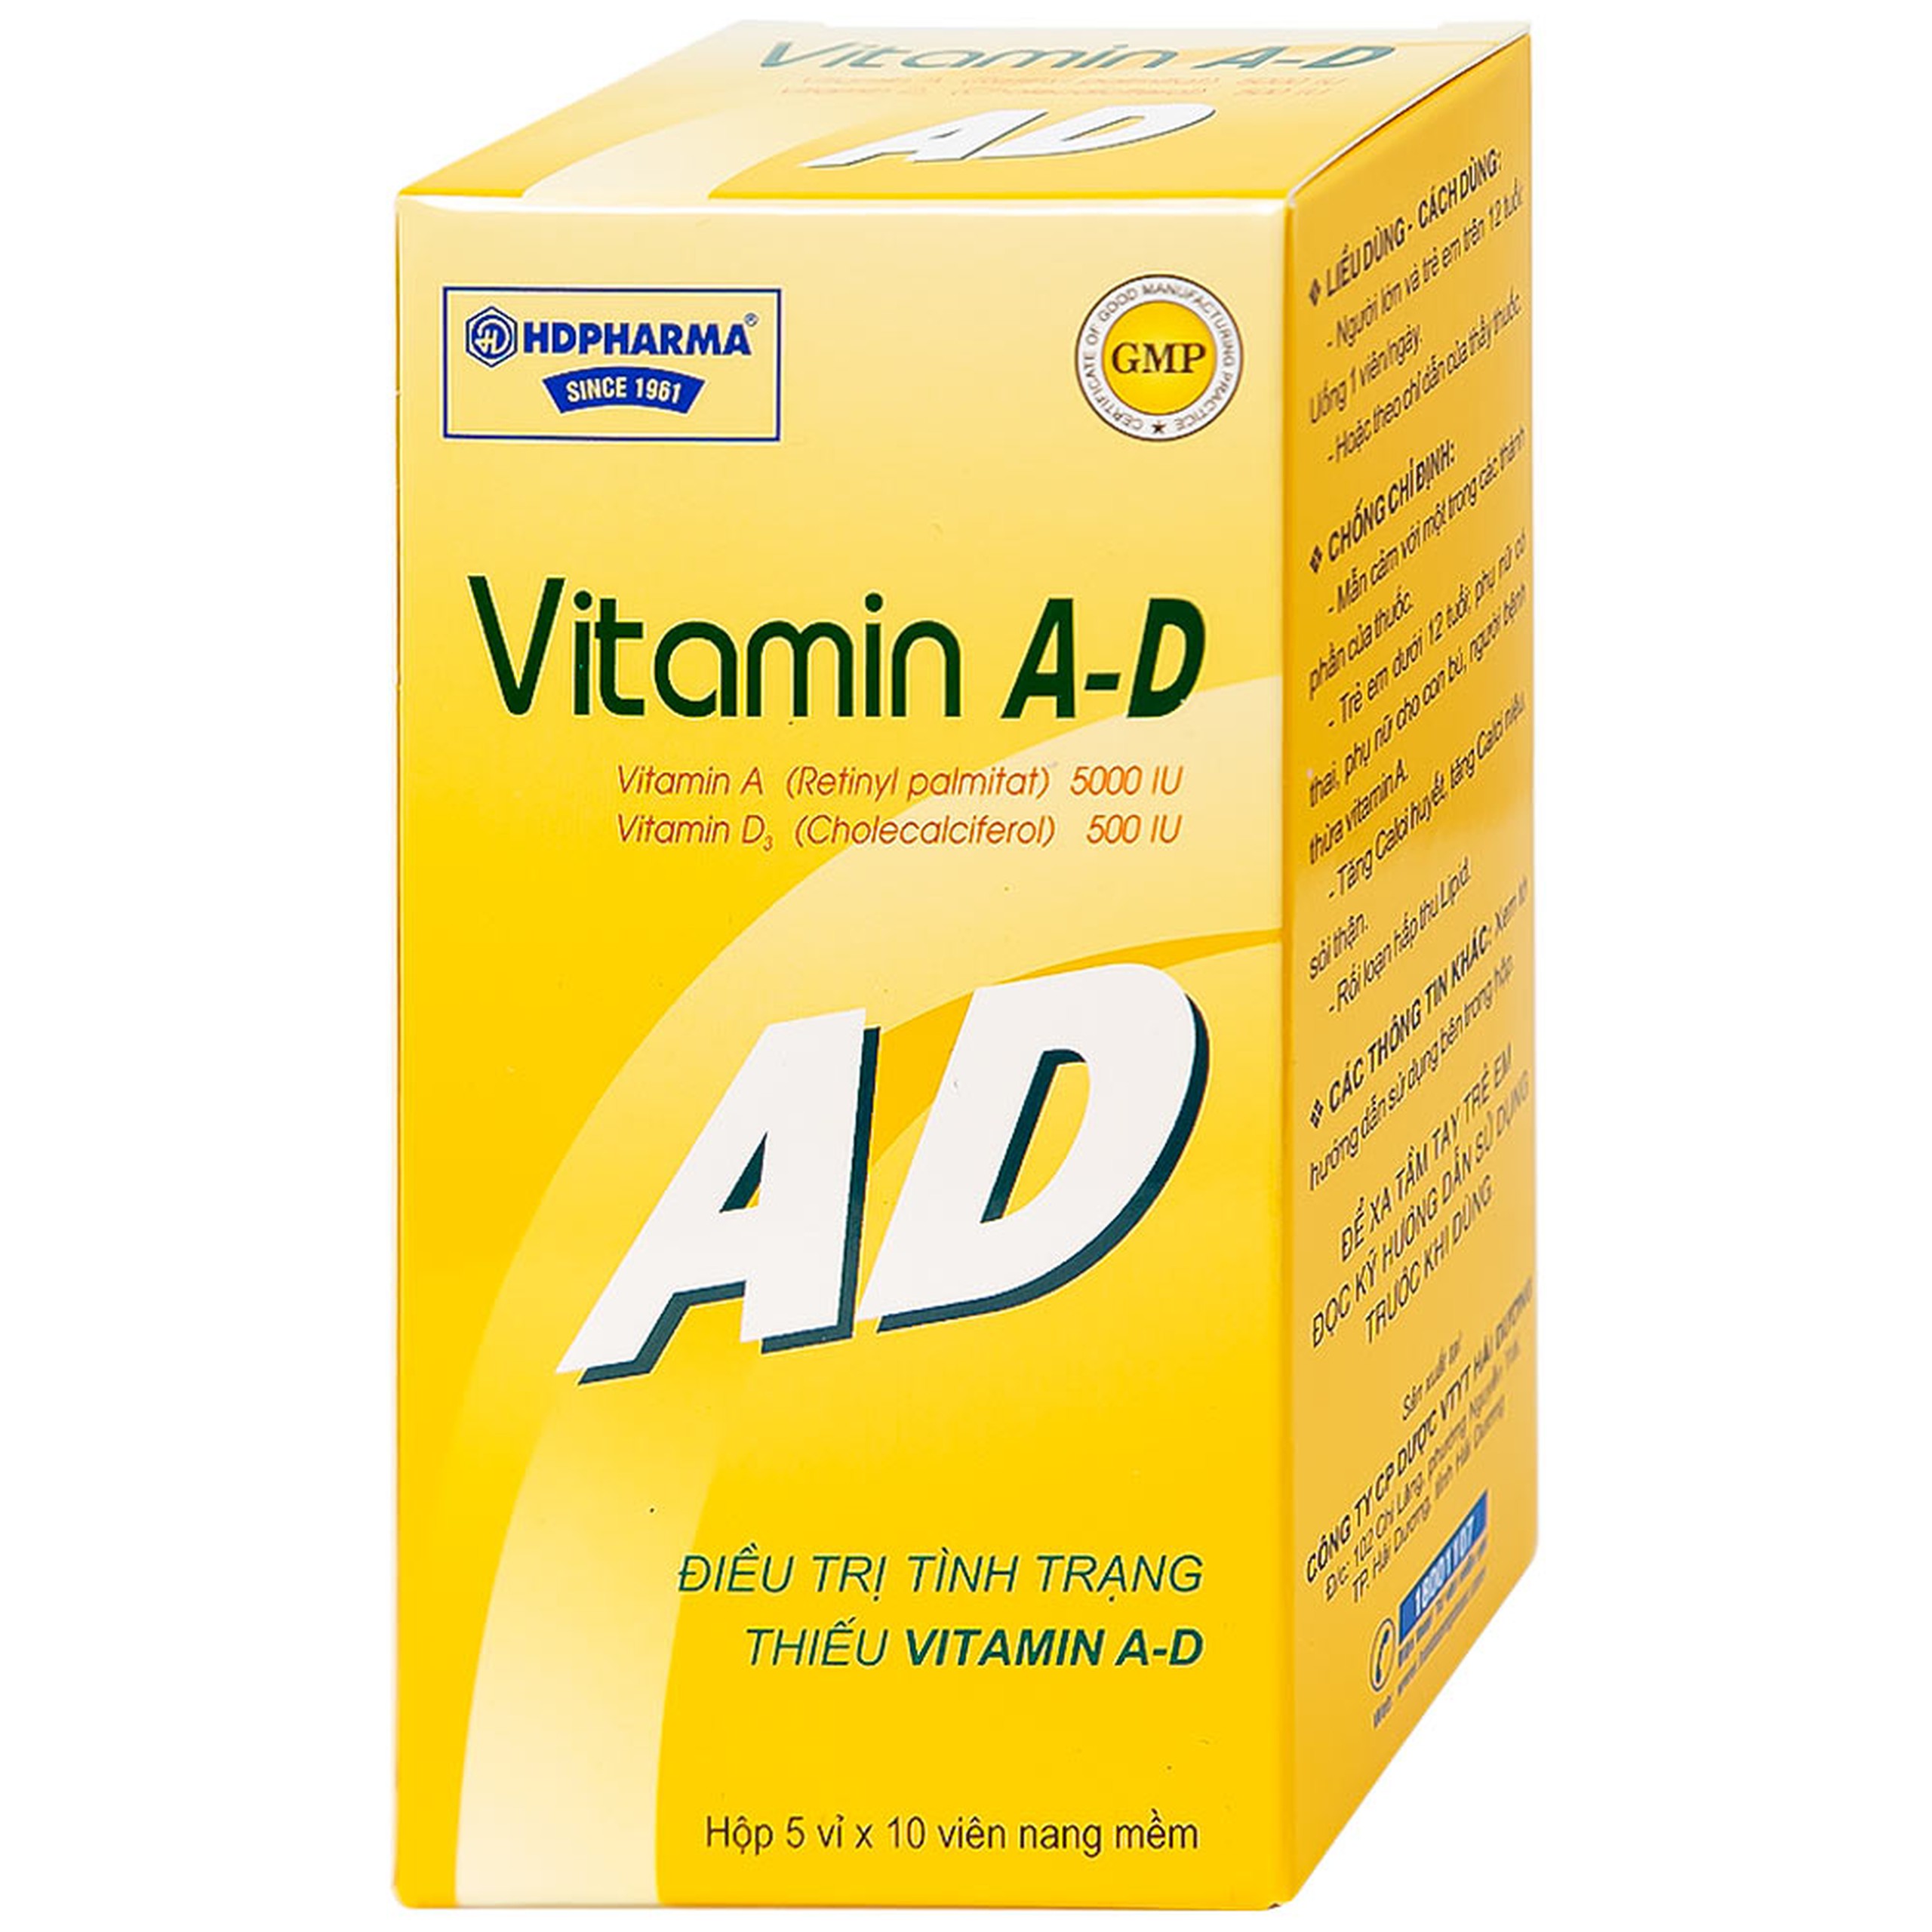 Thuốc Vitamin A-D HDpharma điều trị tình trạng thiếu Vitamin A và D (5 vỉ x 10 viên)